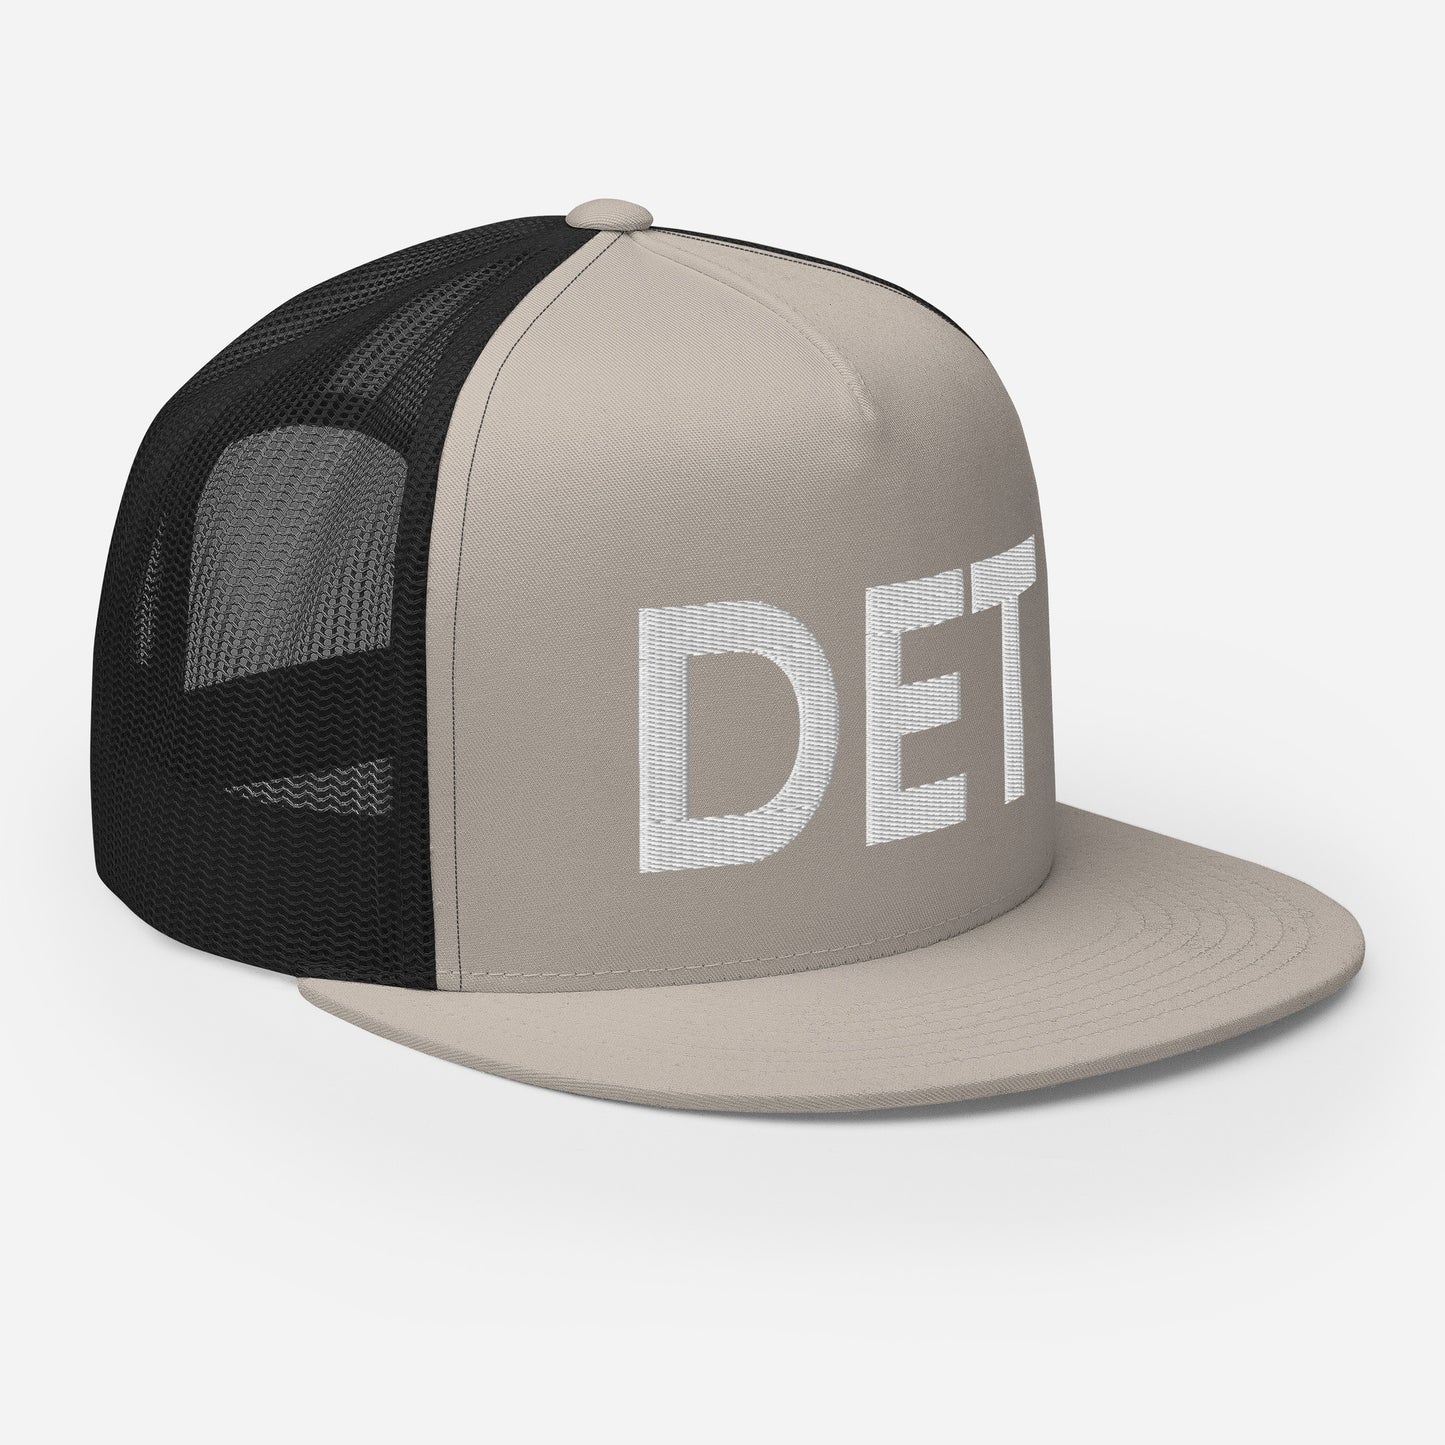 DET Detroit Trucker Hat